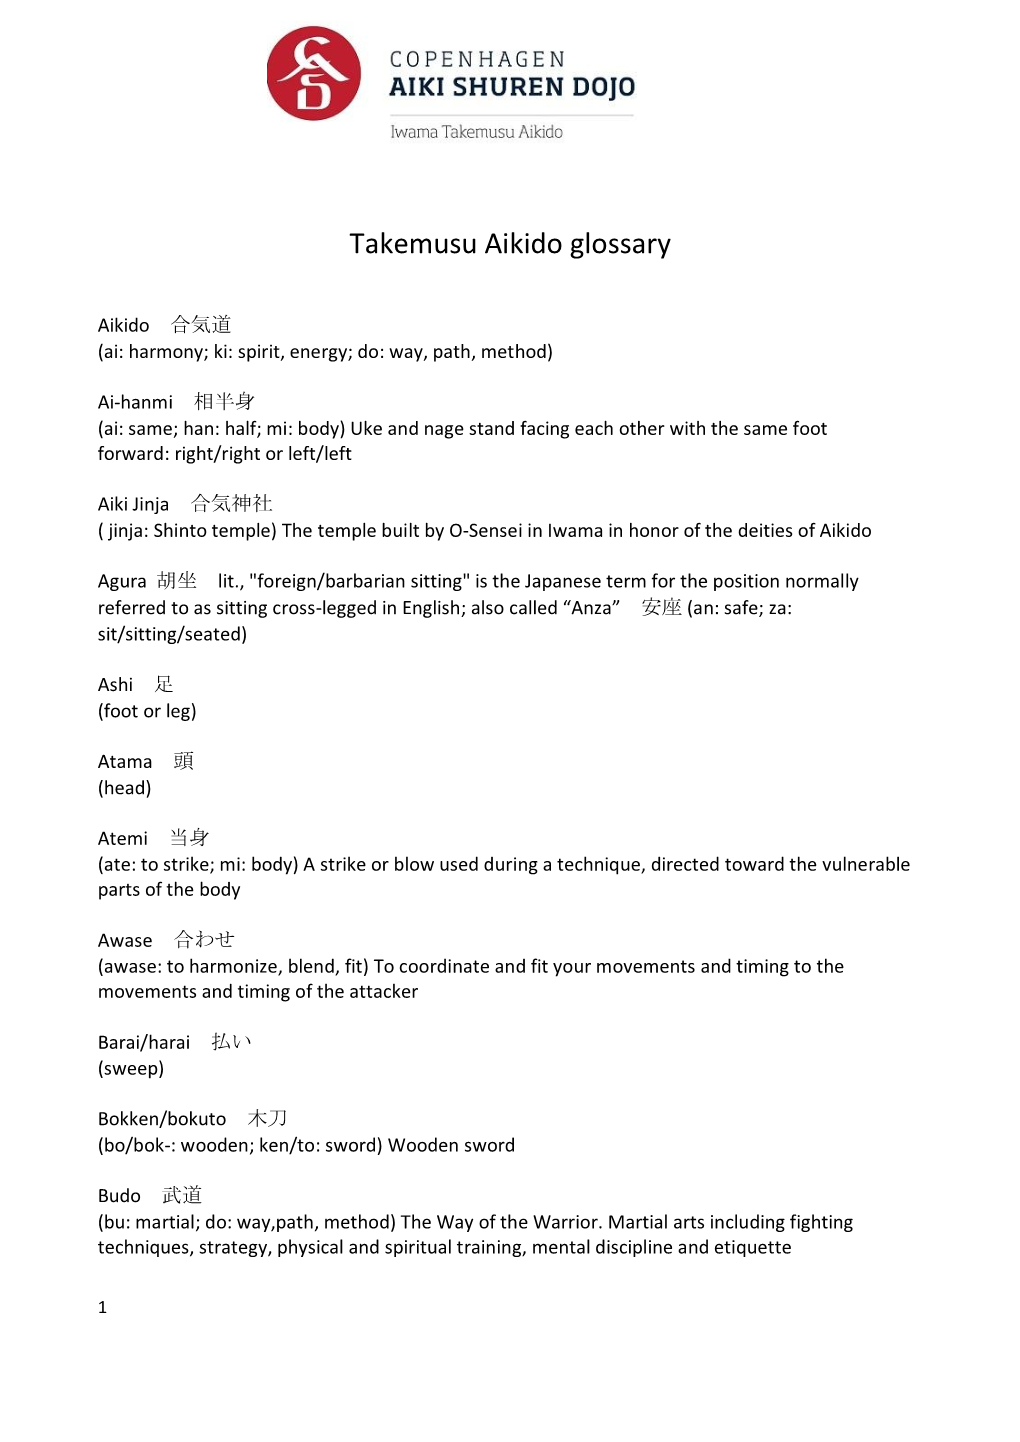 Takemusu Aikido Glossary